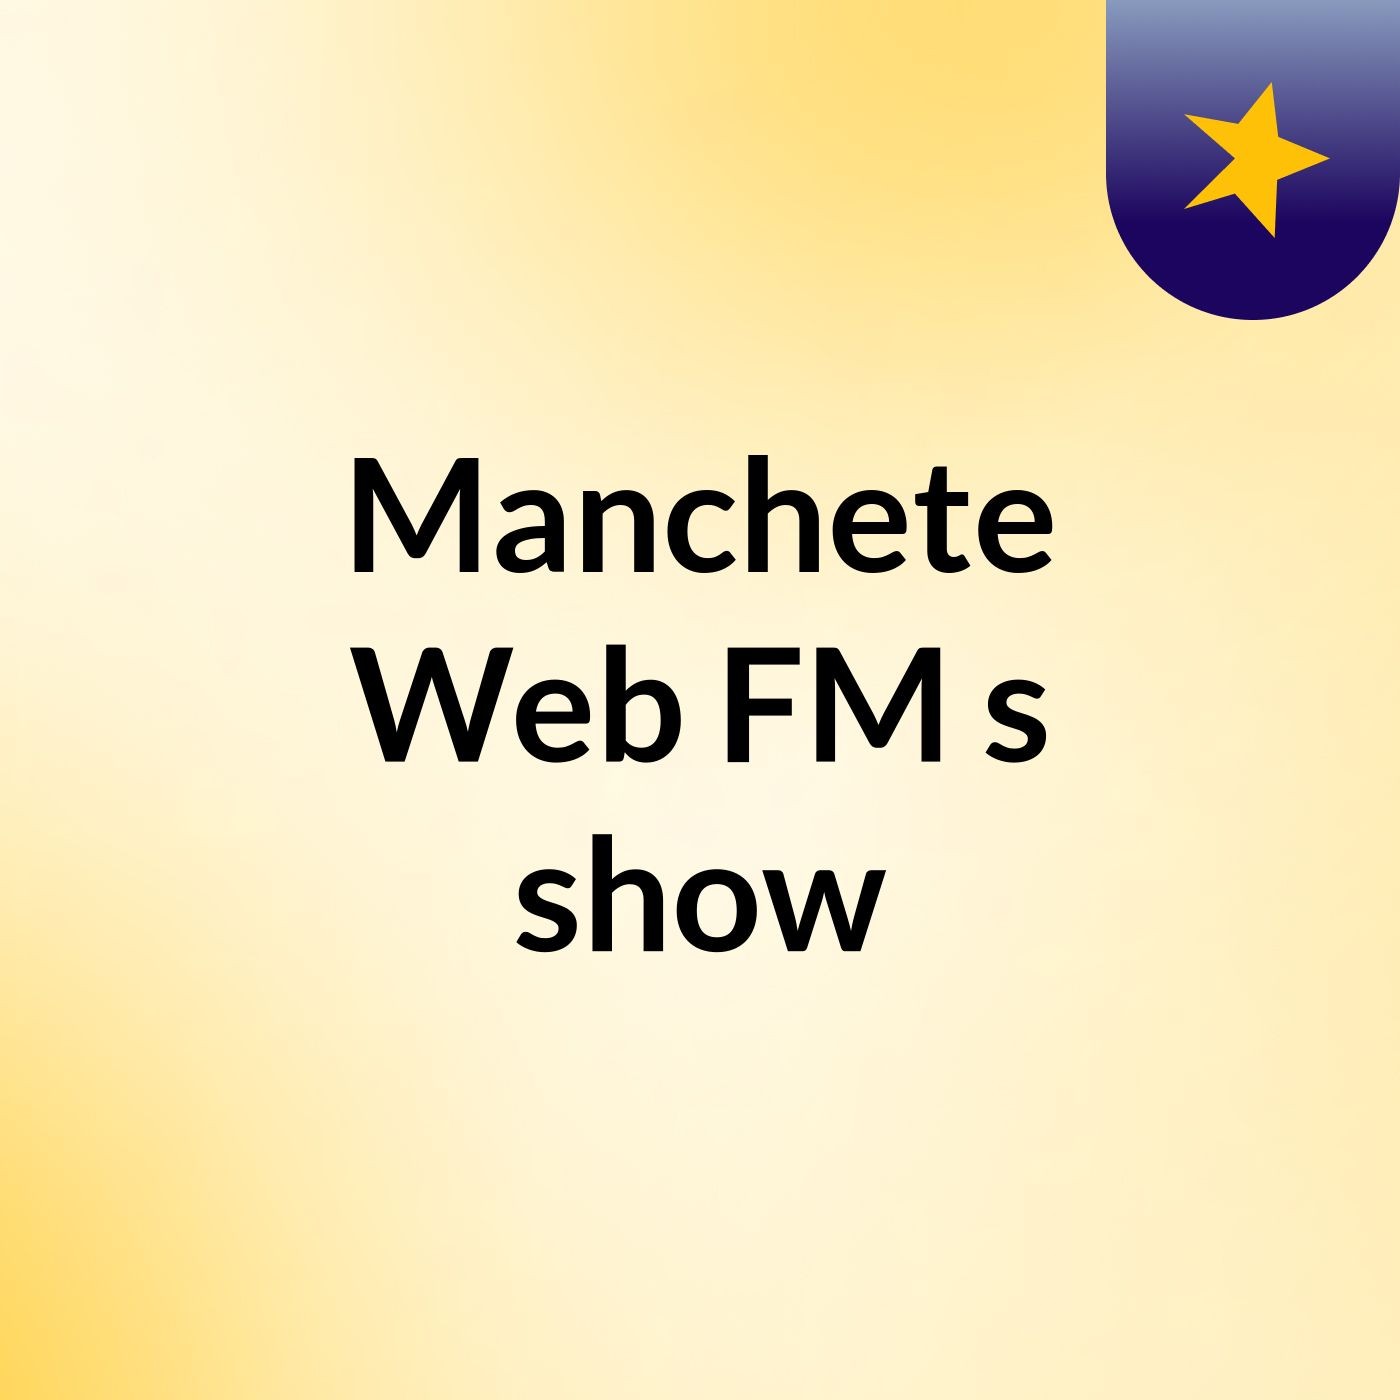 Manchete Web FM's show